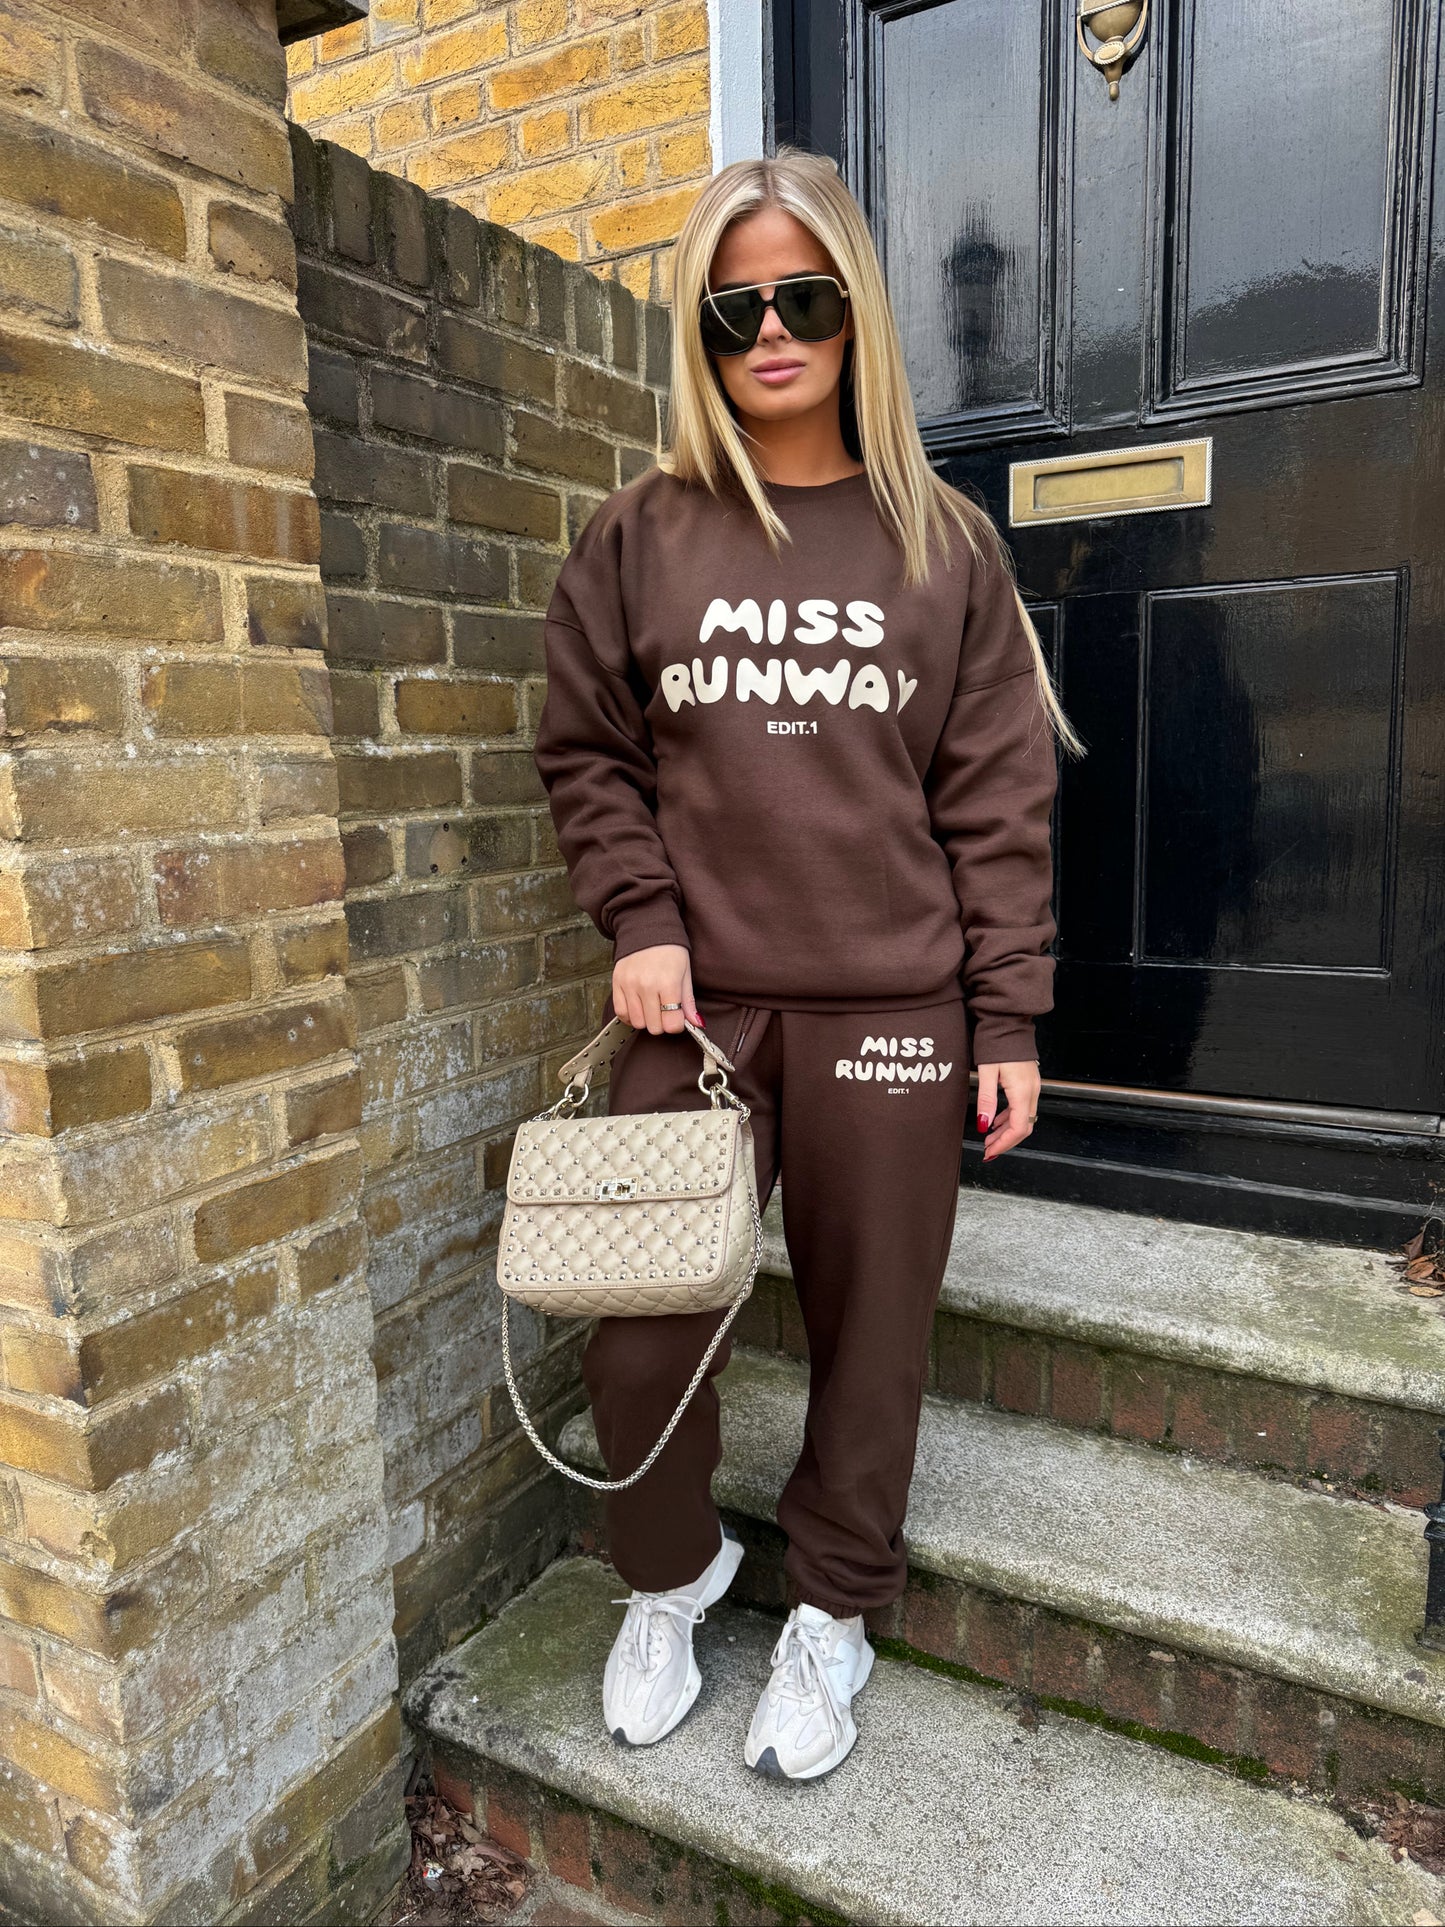 Miss Runway Edit 1 Oversized Sweatshirt Tracksuit Brown